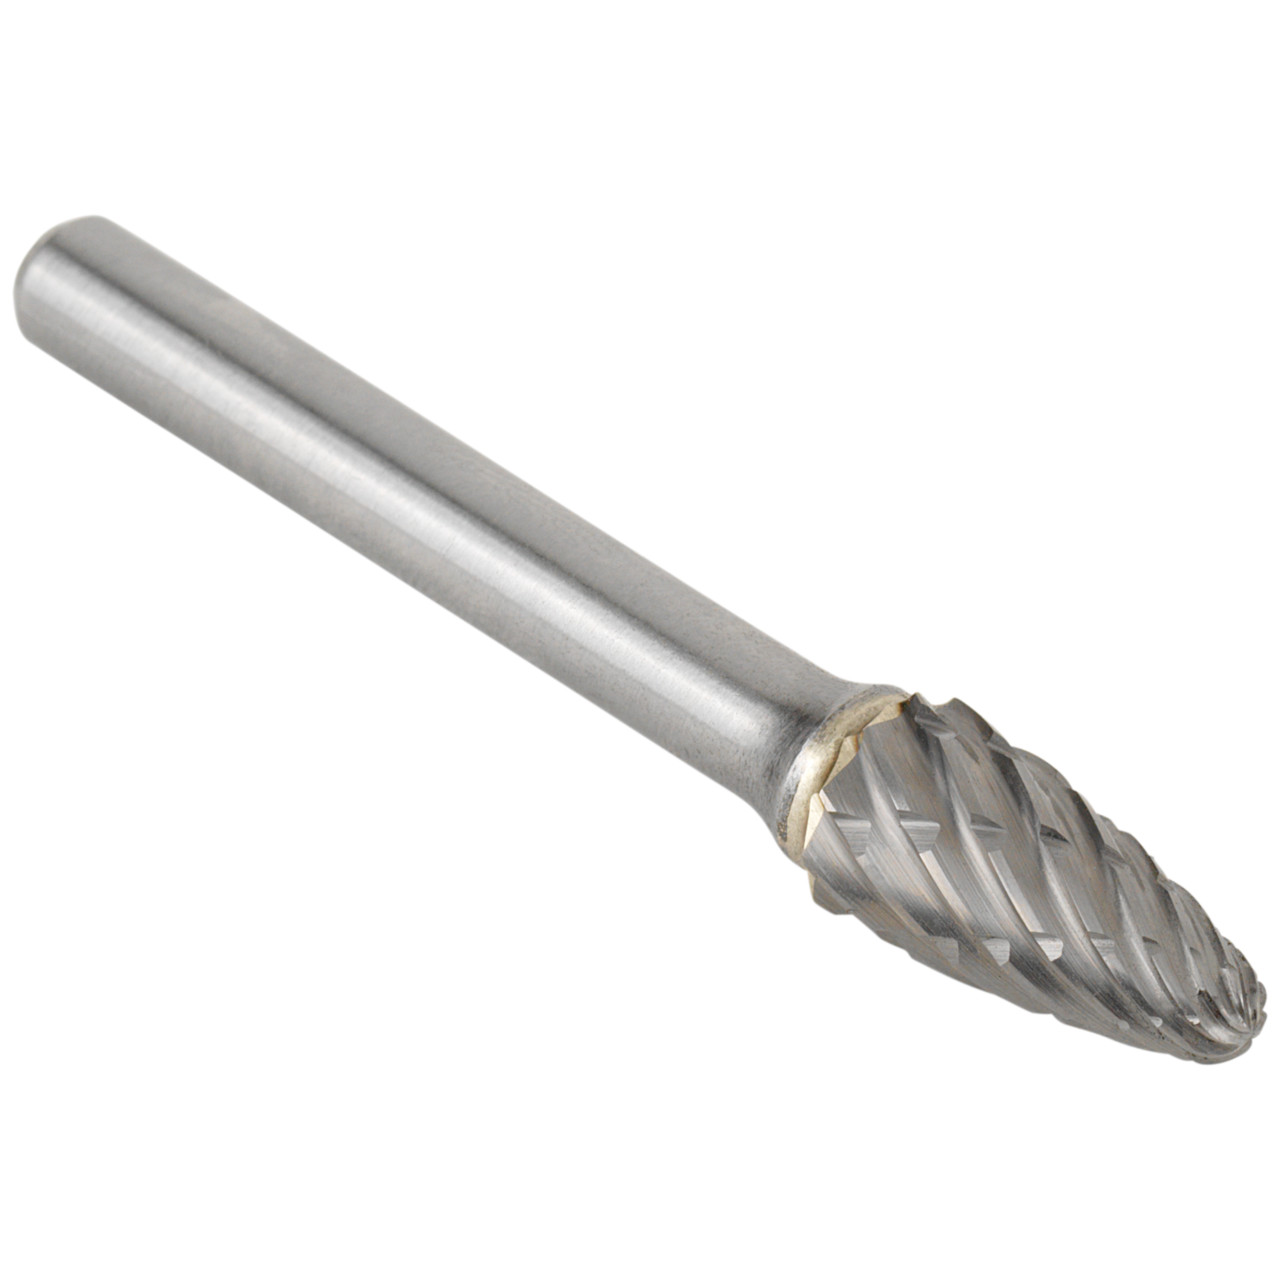 Tyrolit Hardmetalen frees DxT-SxL 6x18-6x50 Voor staal, vorm: 52RBF - boom, Art. 34213588